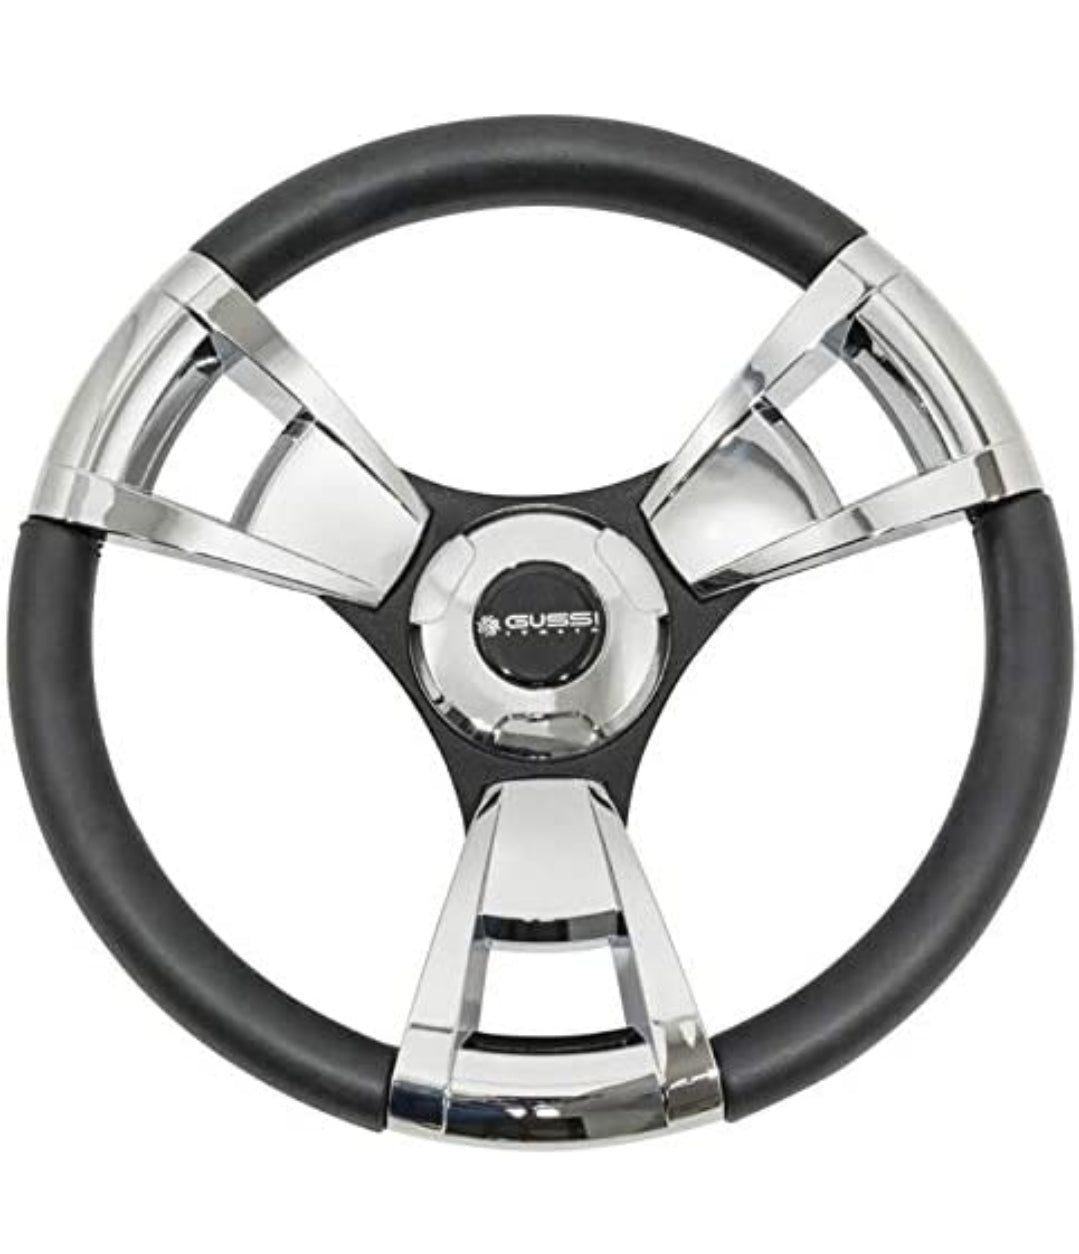 3G Gussi Model 13 Black/Chrome Steering Wheel for EZGO & Star Golf Carts